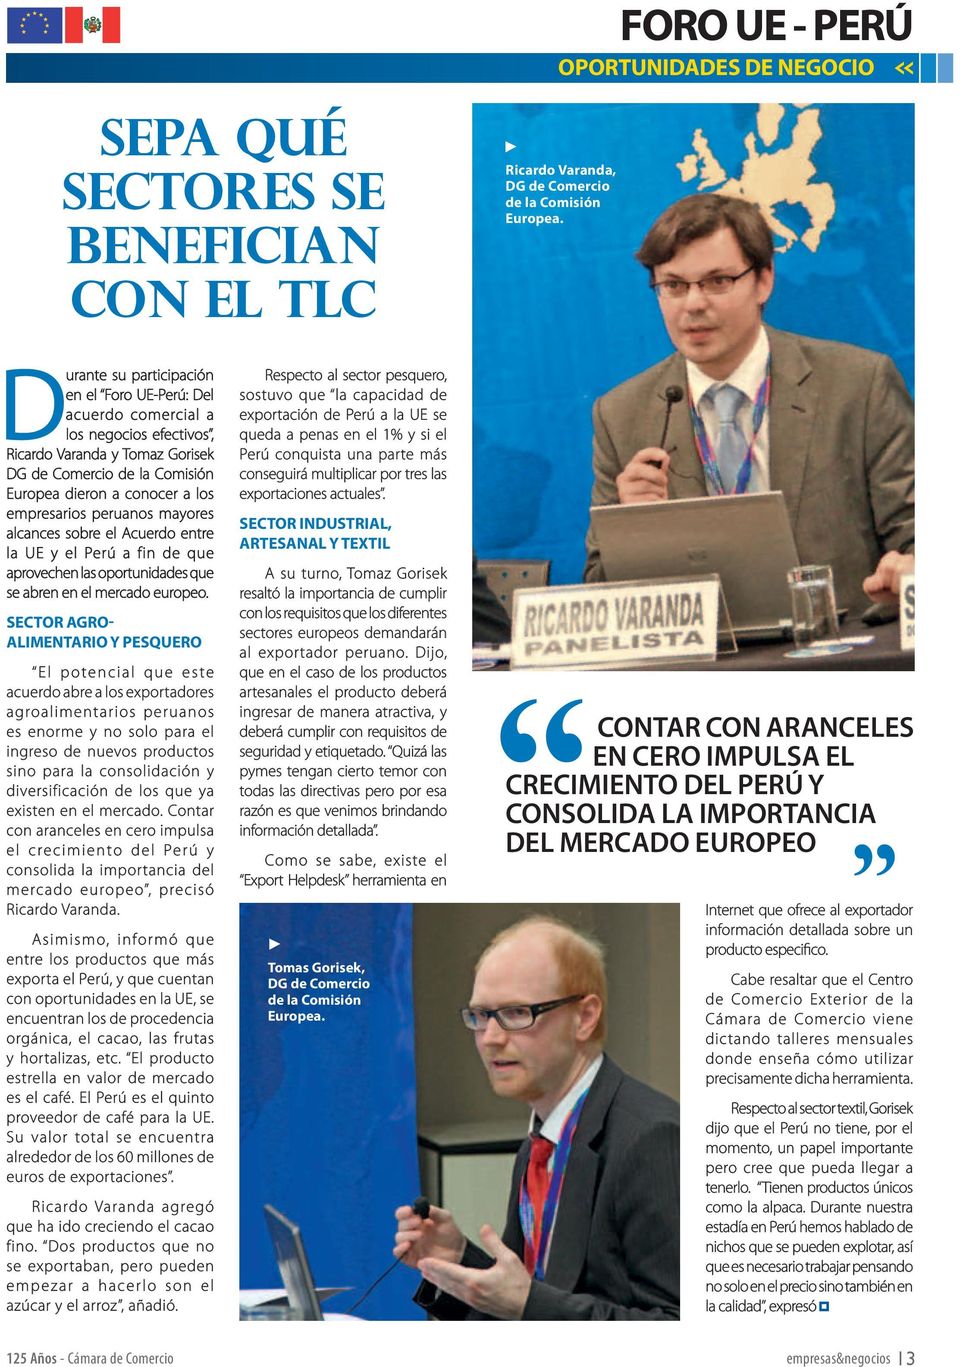 peruanos mayores alcances sobre el Acuerdo entre la UE y el Perú a fin de que aprovechen las oportunidades que se abren en el mercado europeo.